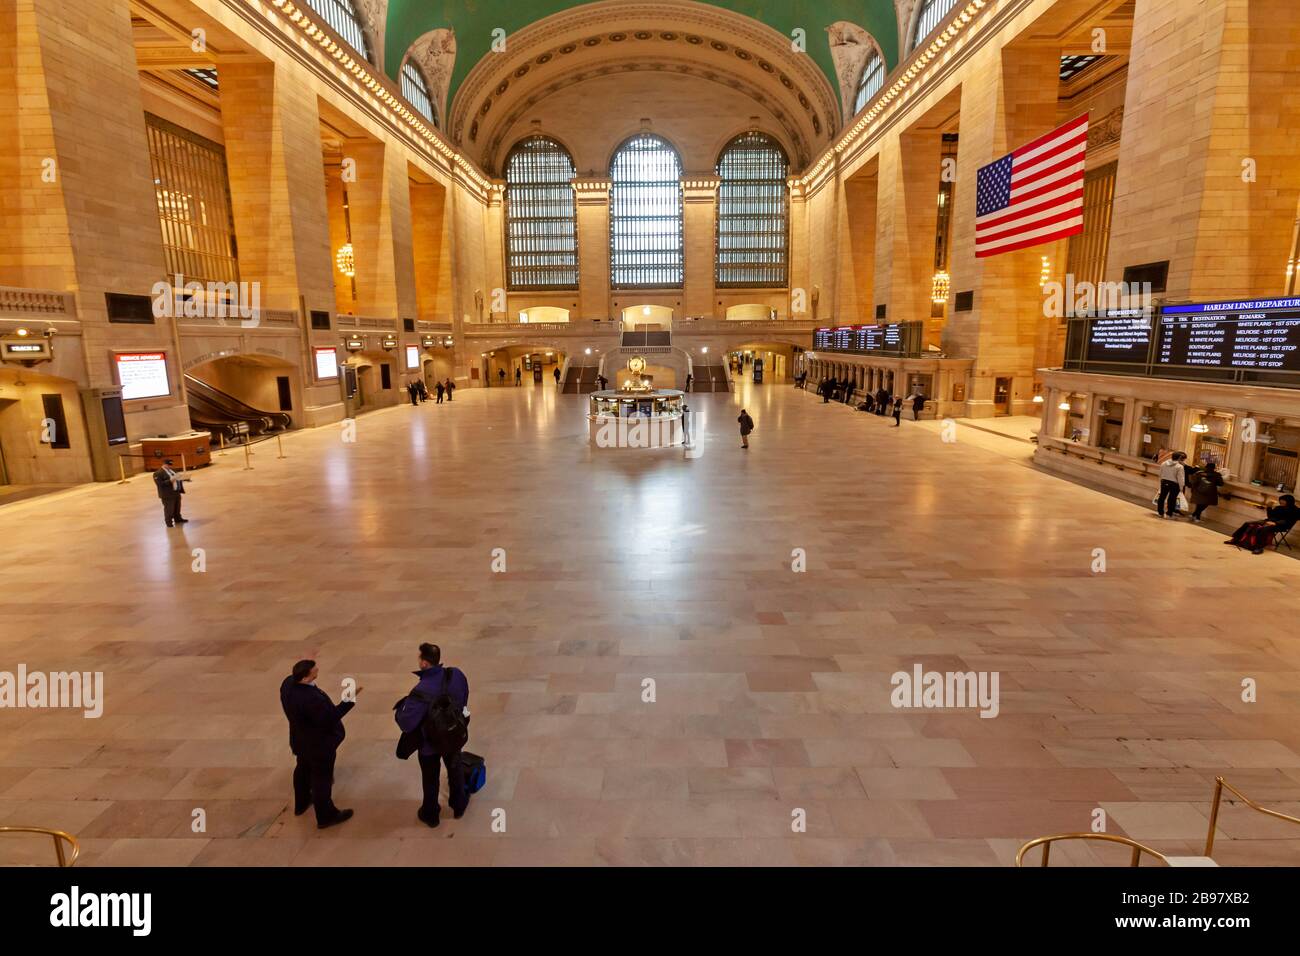 Pochissimi passeggeri nella Grand Central Station di New York a causa del COVID-19, Coronavirus. Foto Stock